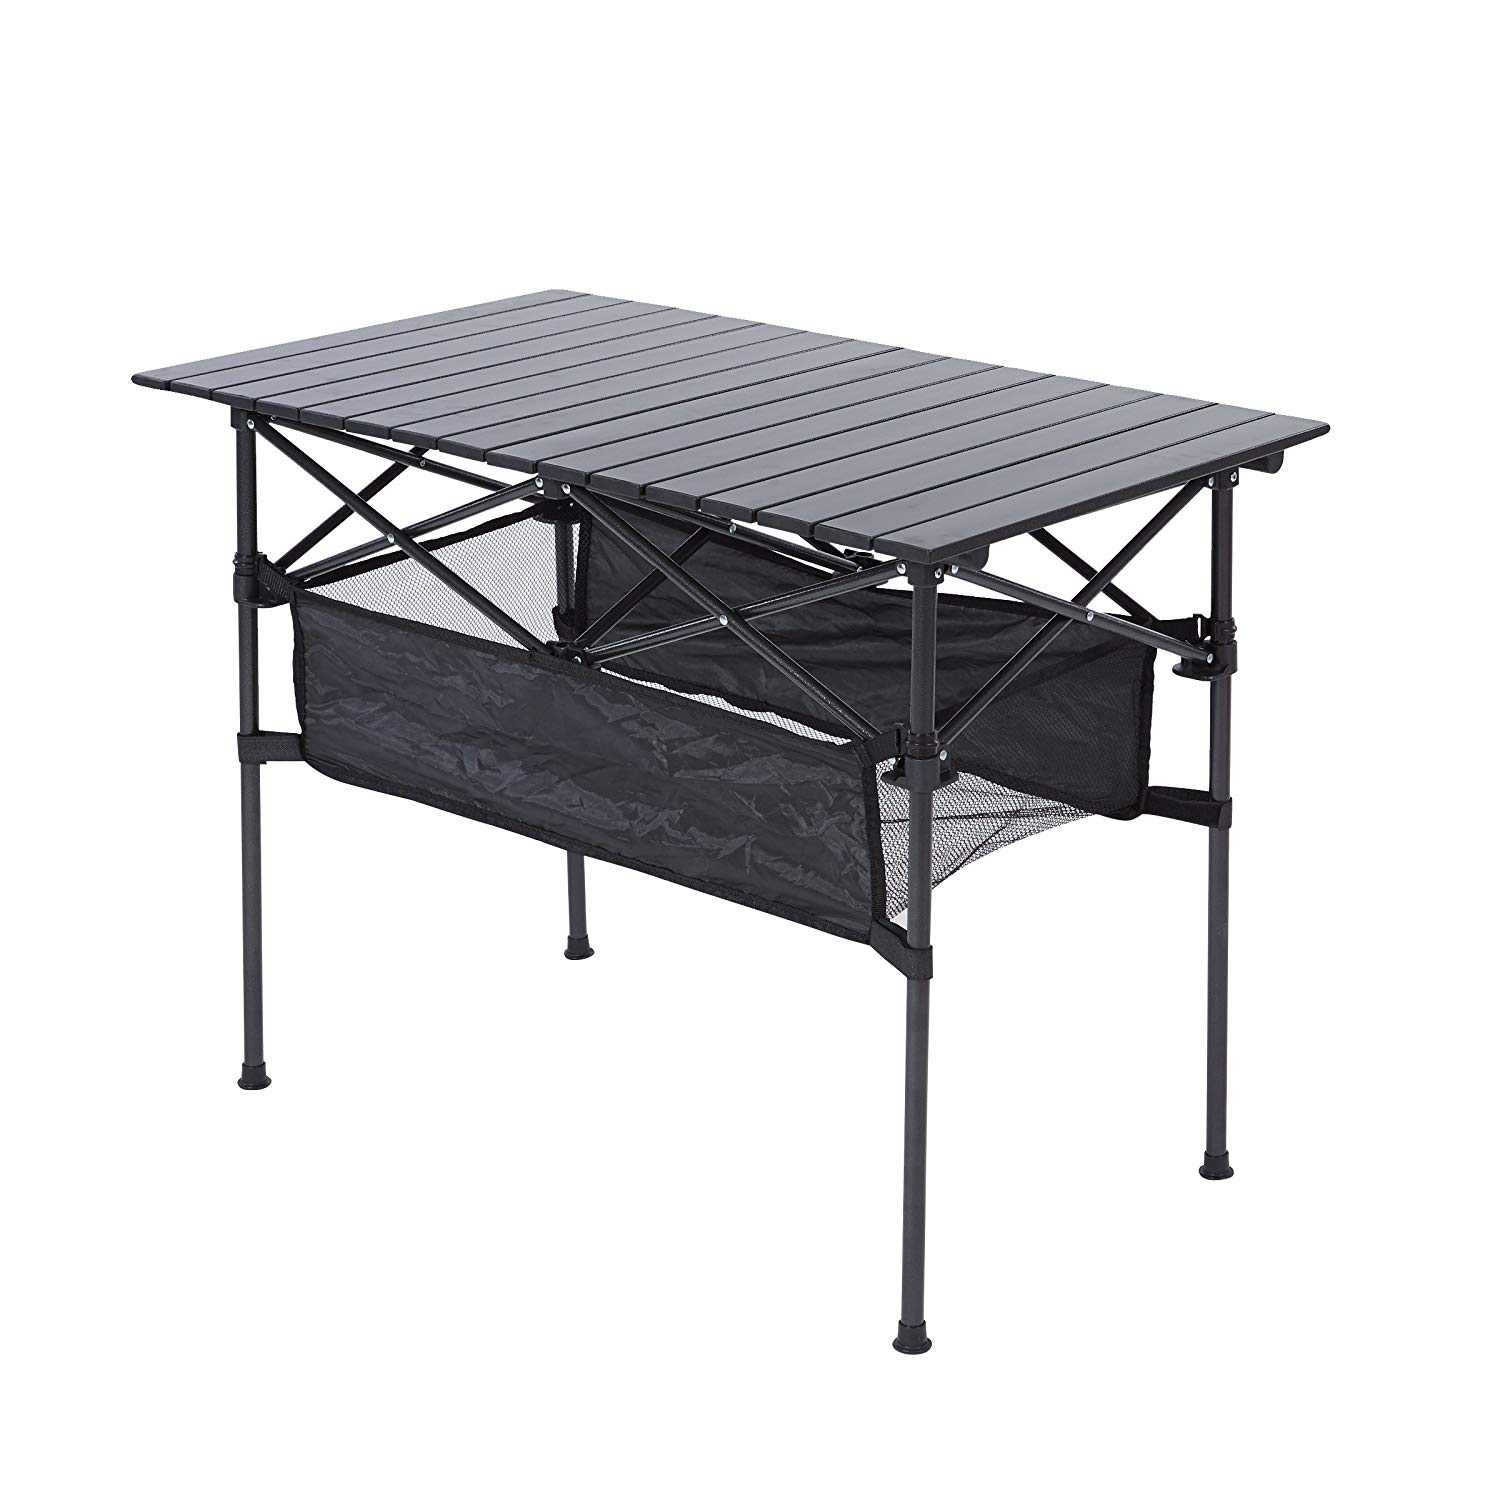 RORAIMA Easy Setup Portable Aluminum Folding Table